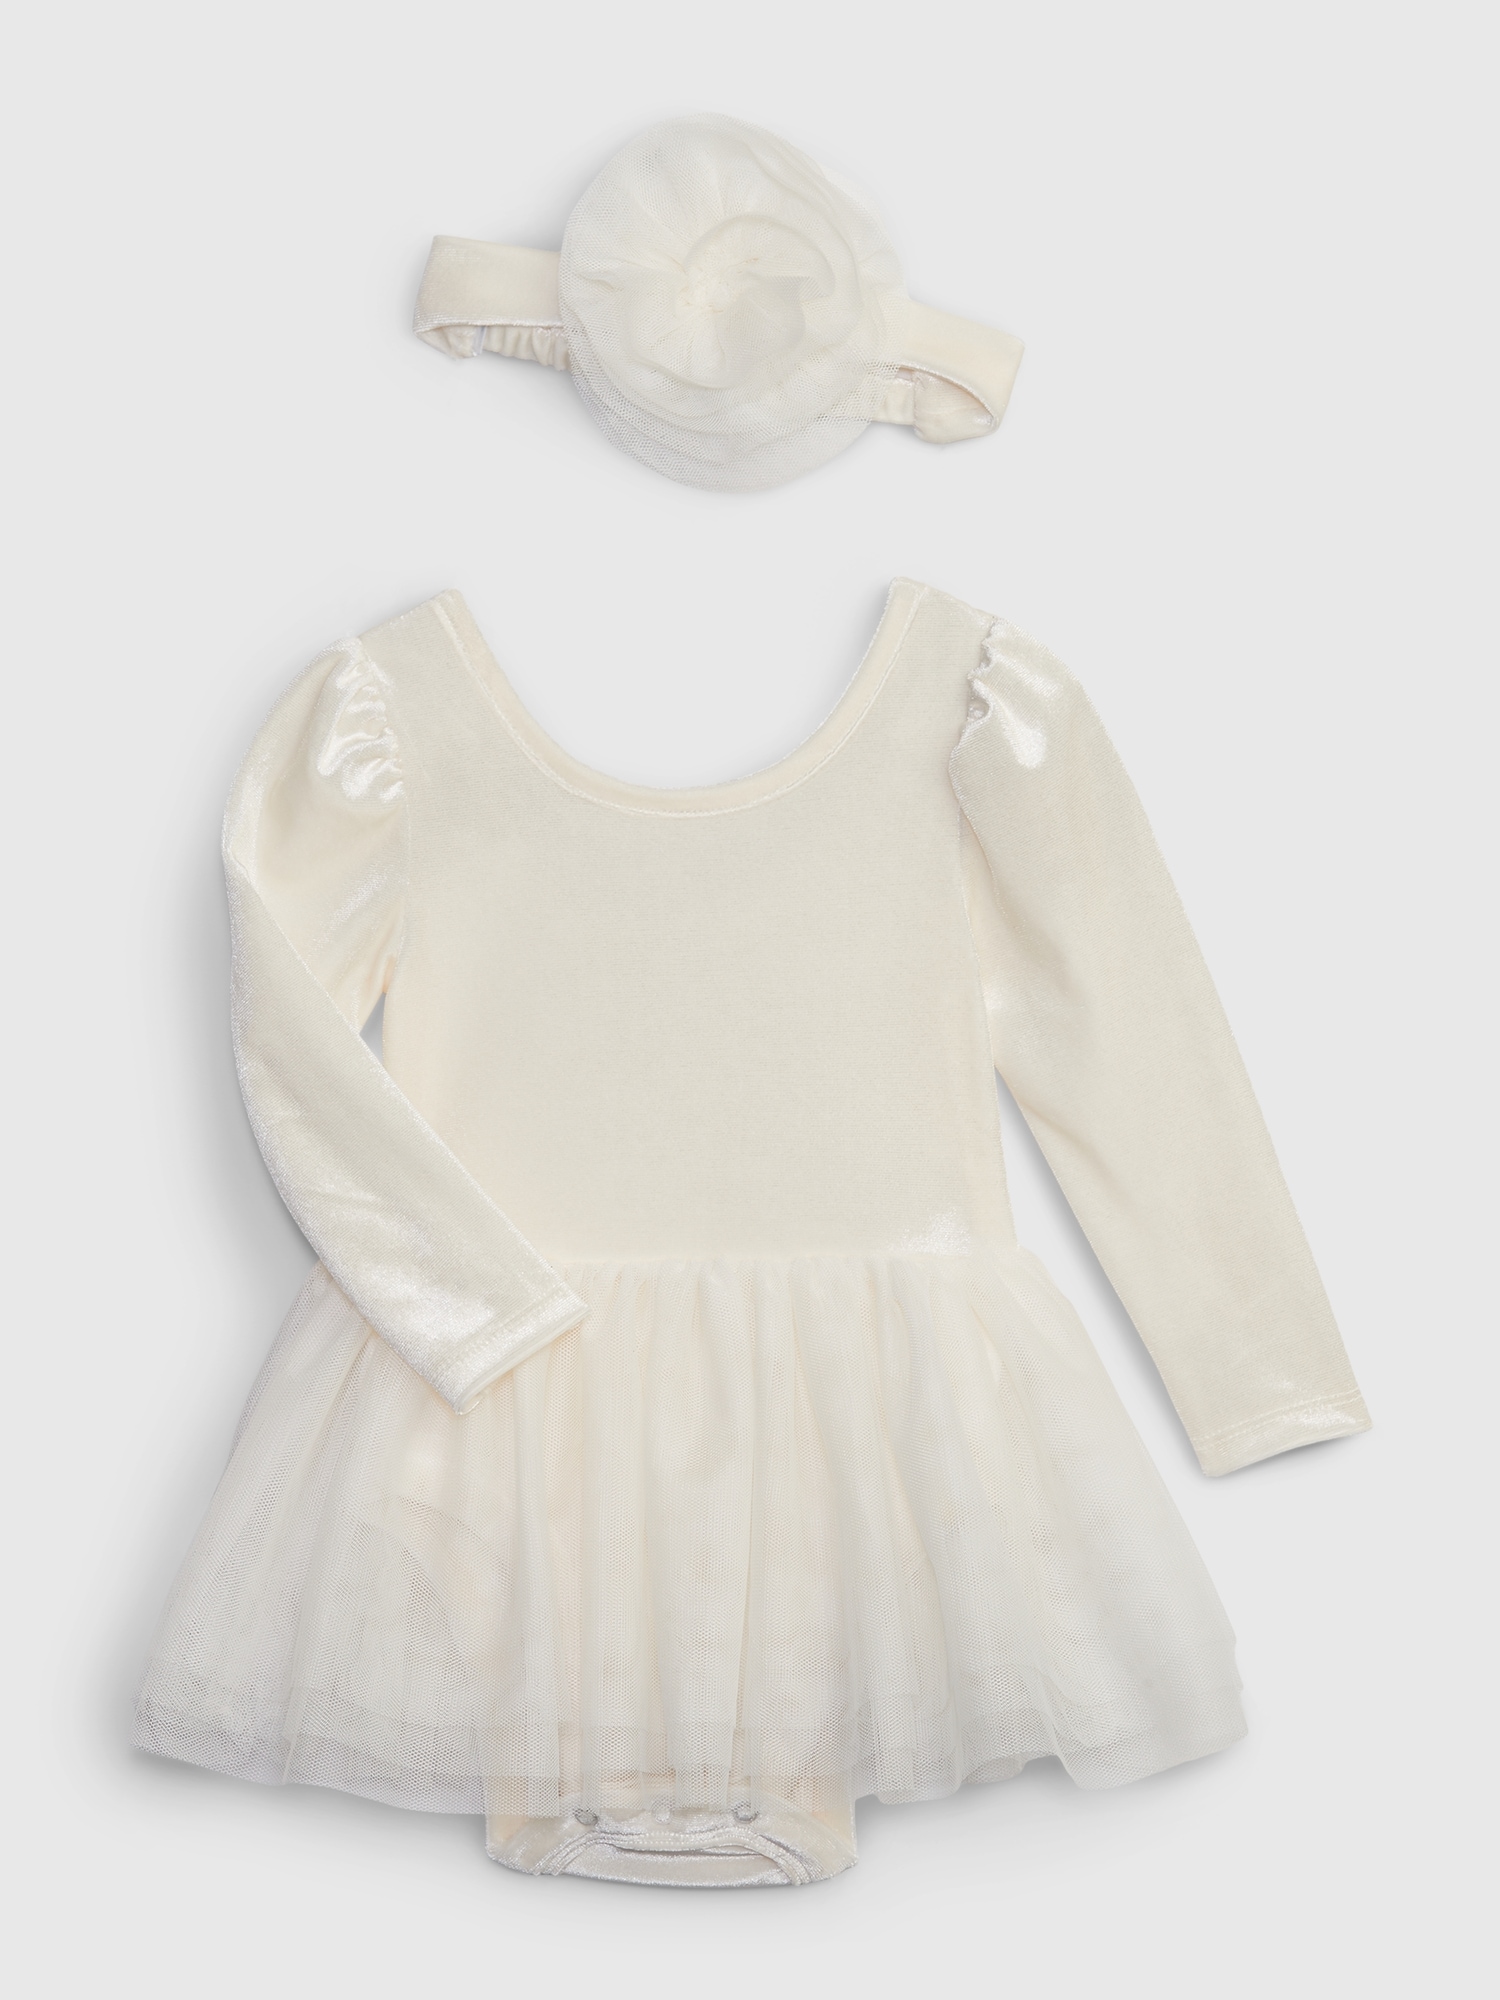 Baby Velvet Tulle Dress Set